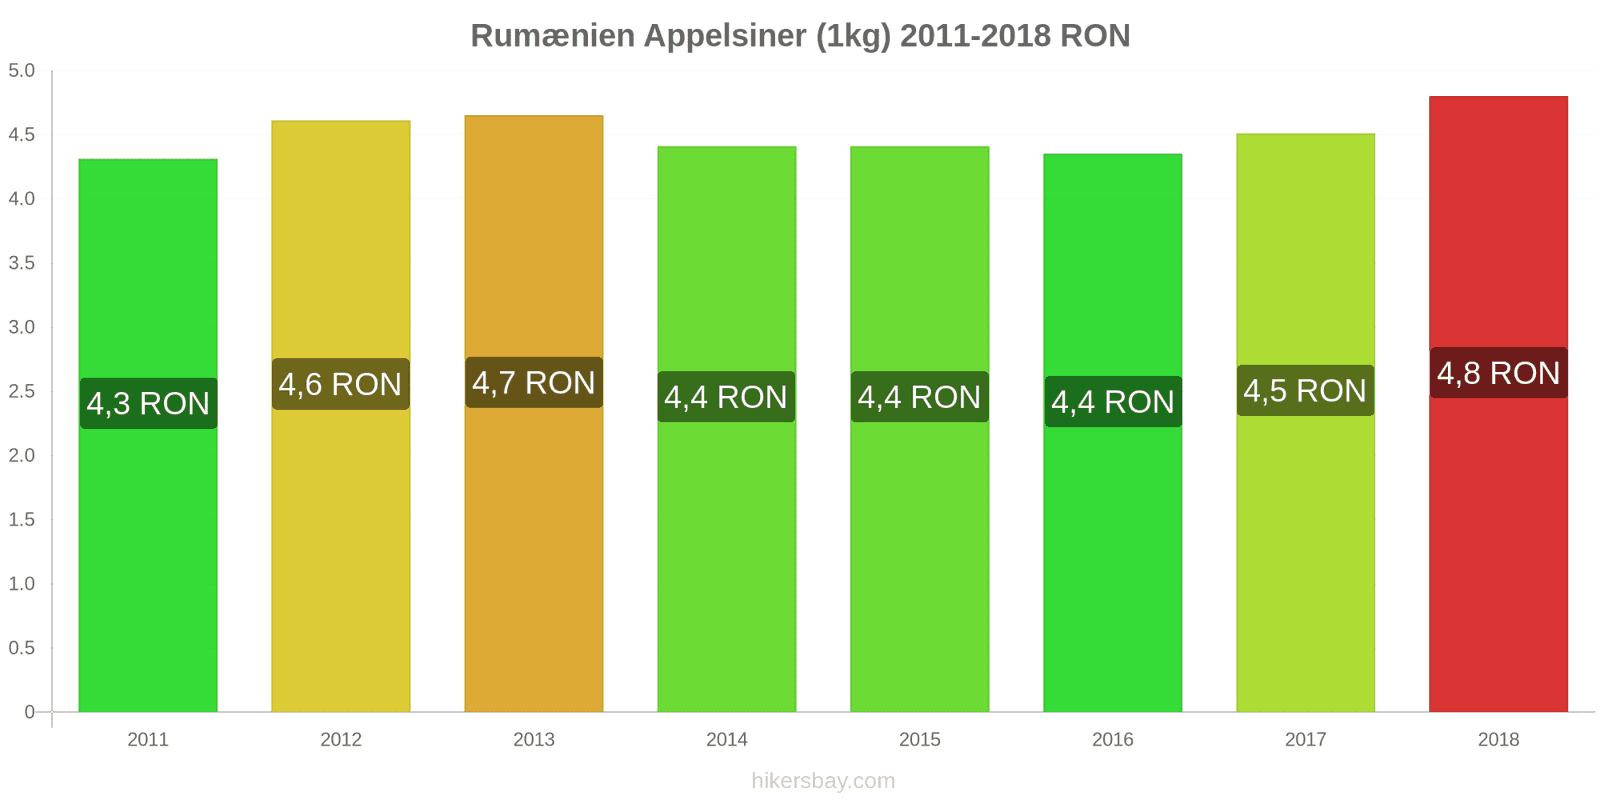 Rumænien prisændringer Appelsiner (1kg) hikersbay.com